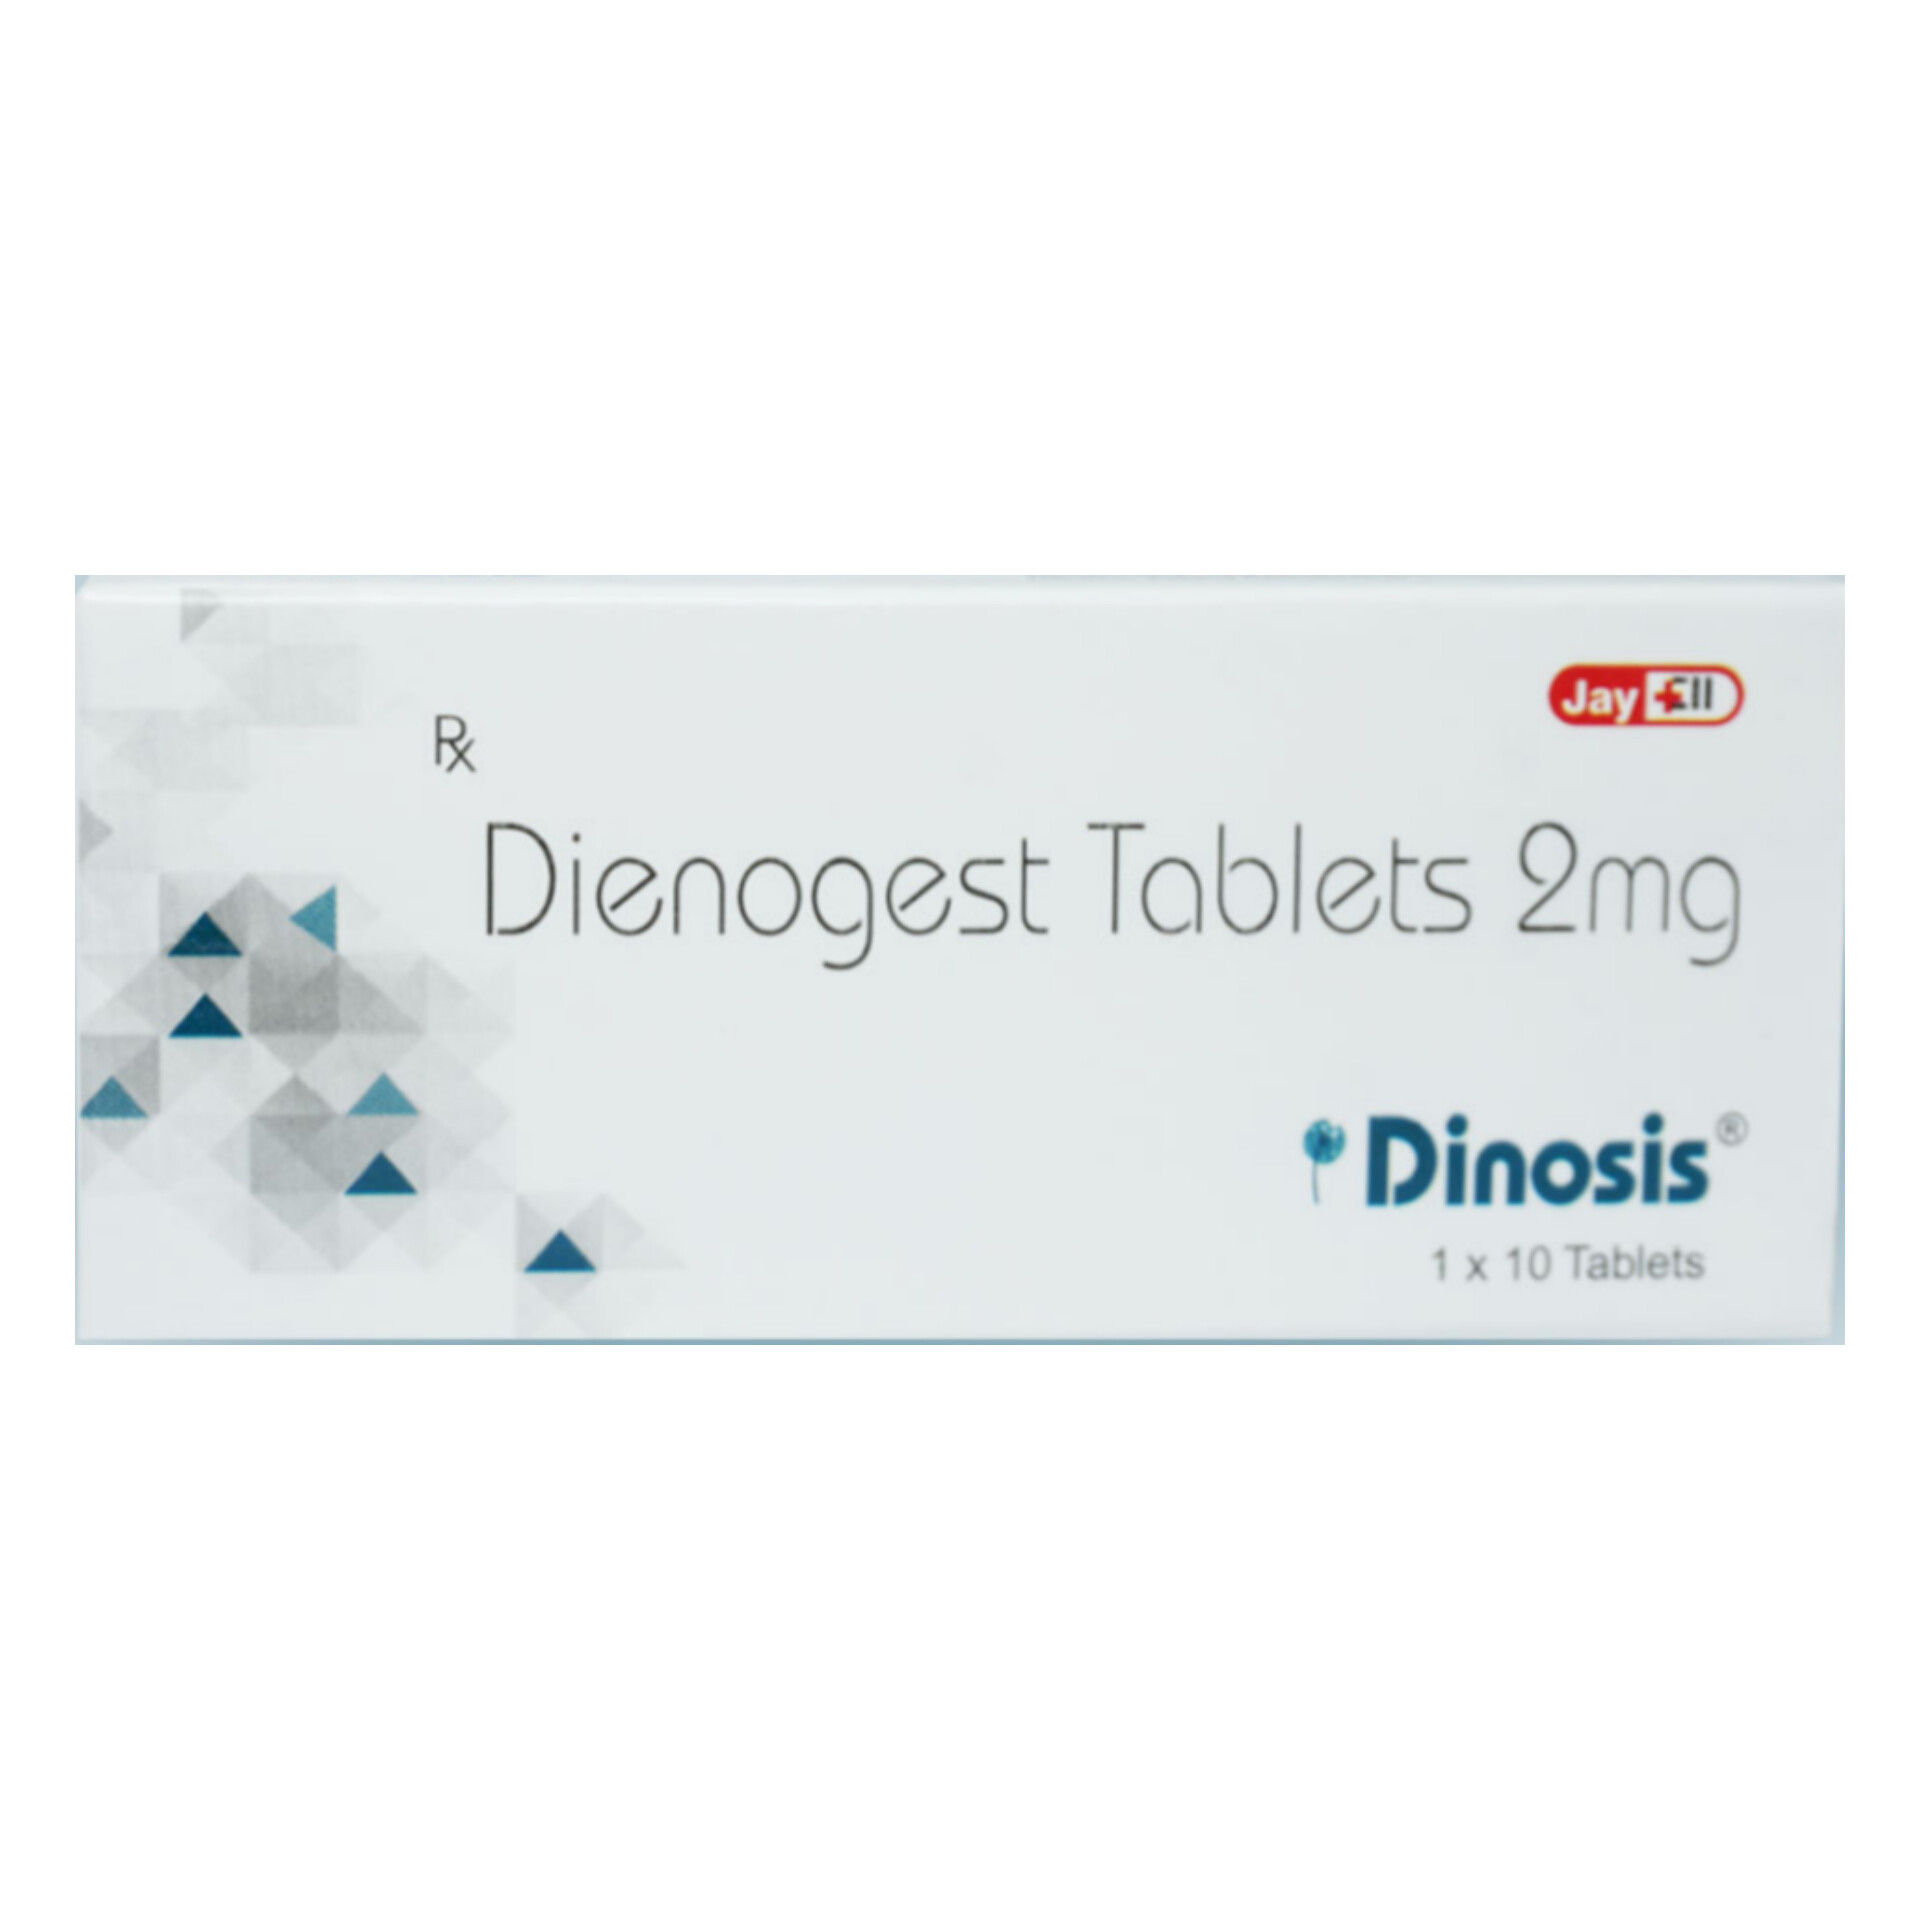 Buy Dinosis Tablet 10's Online